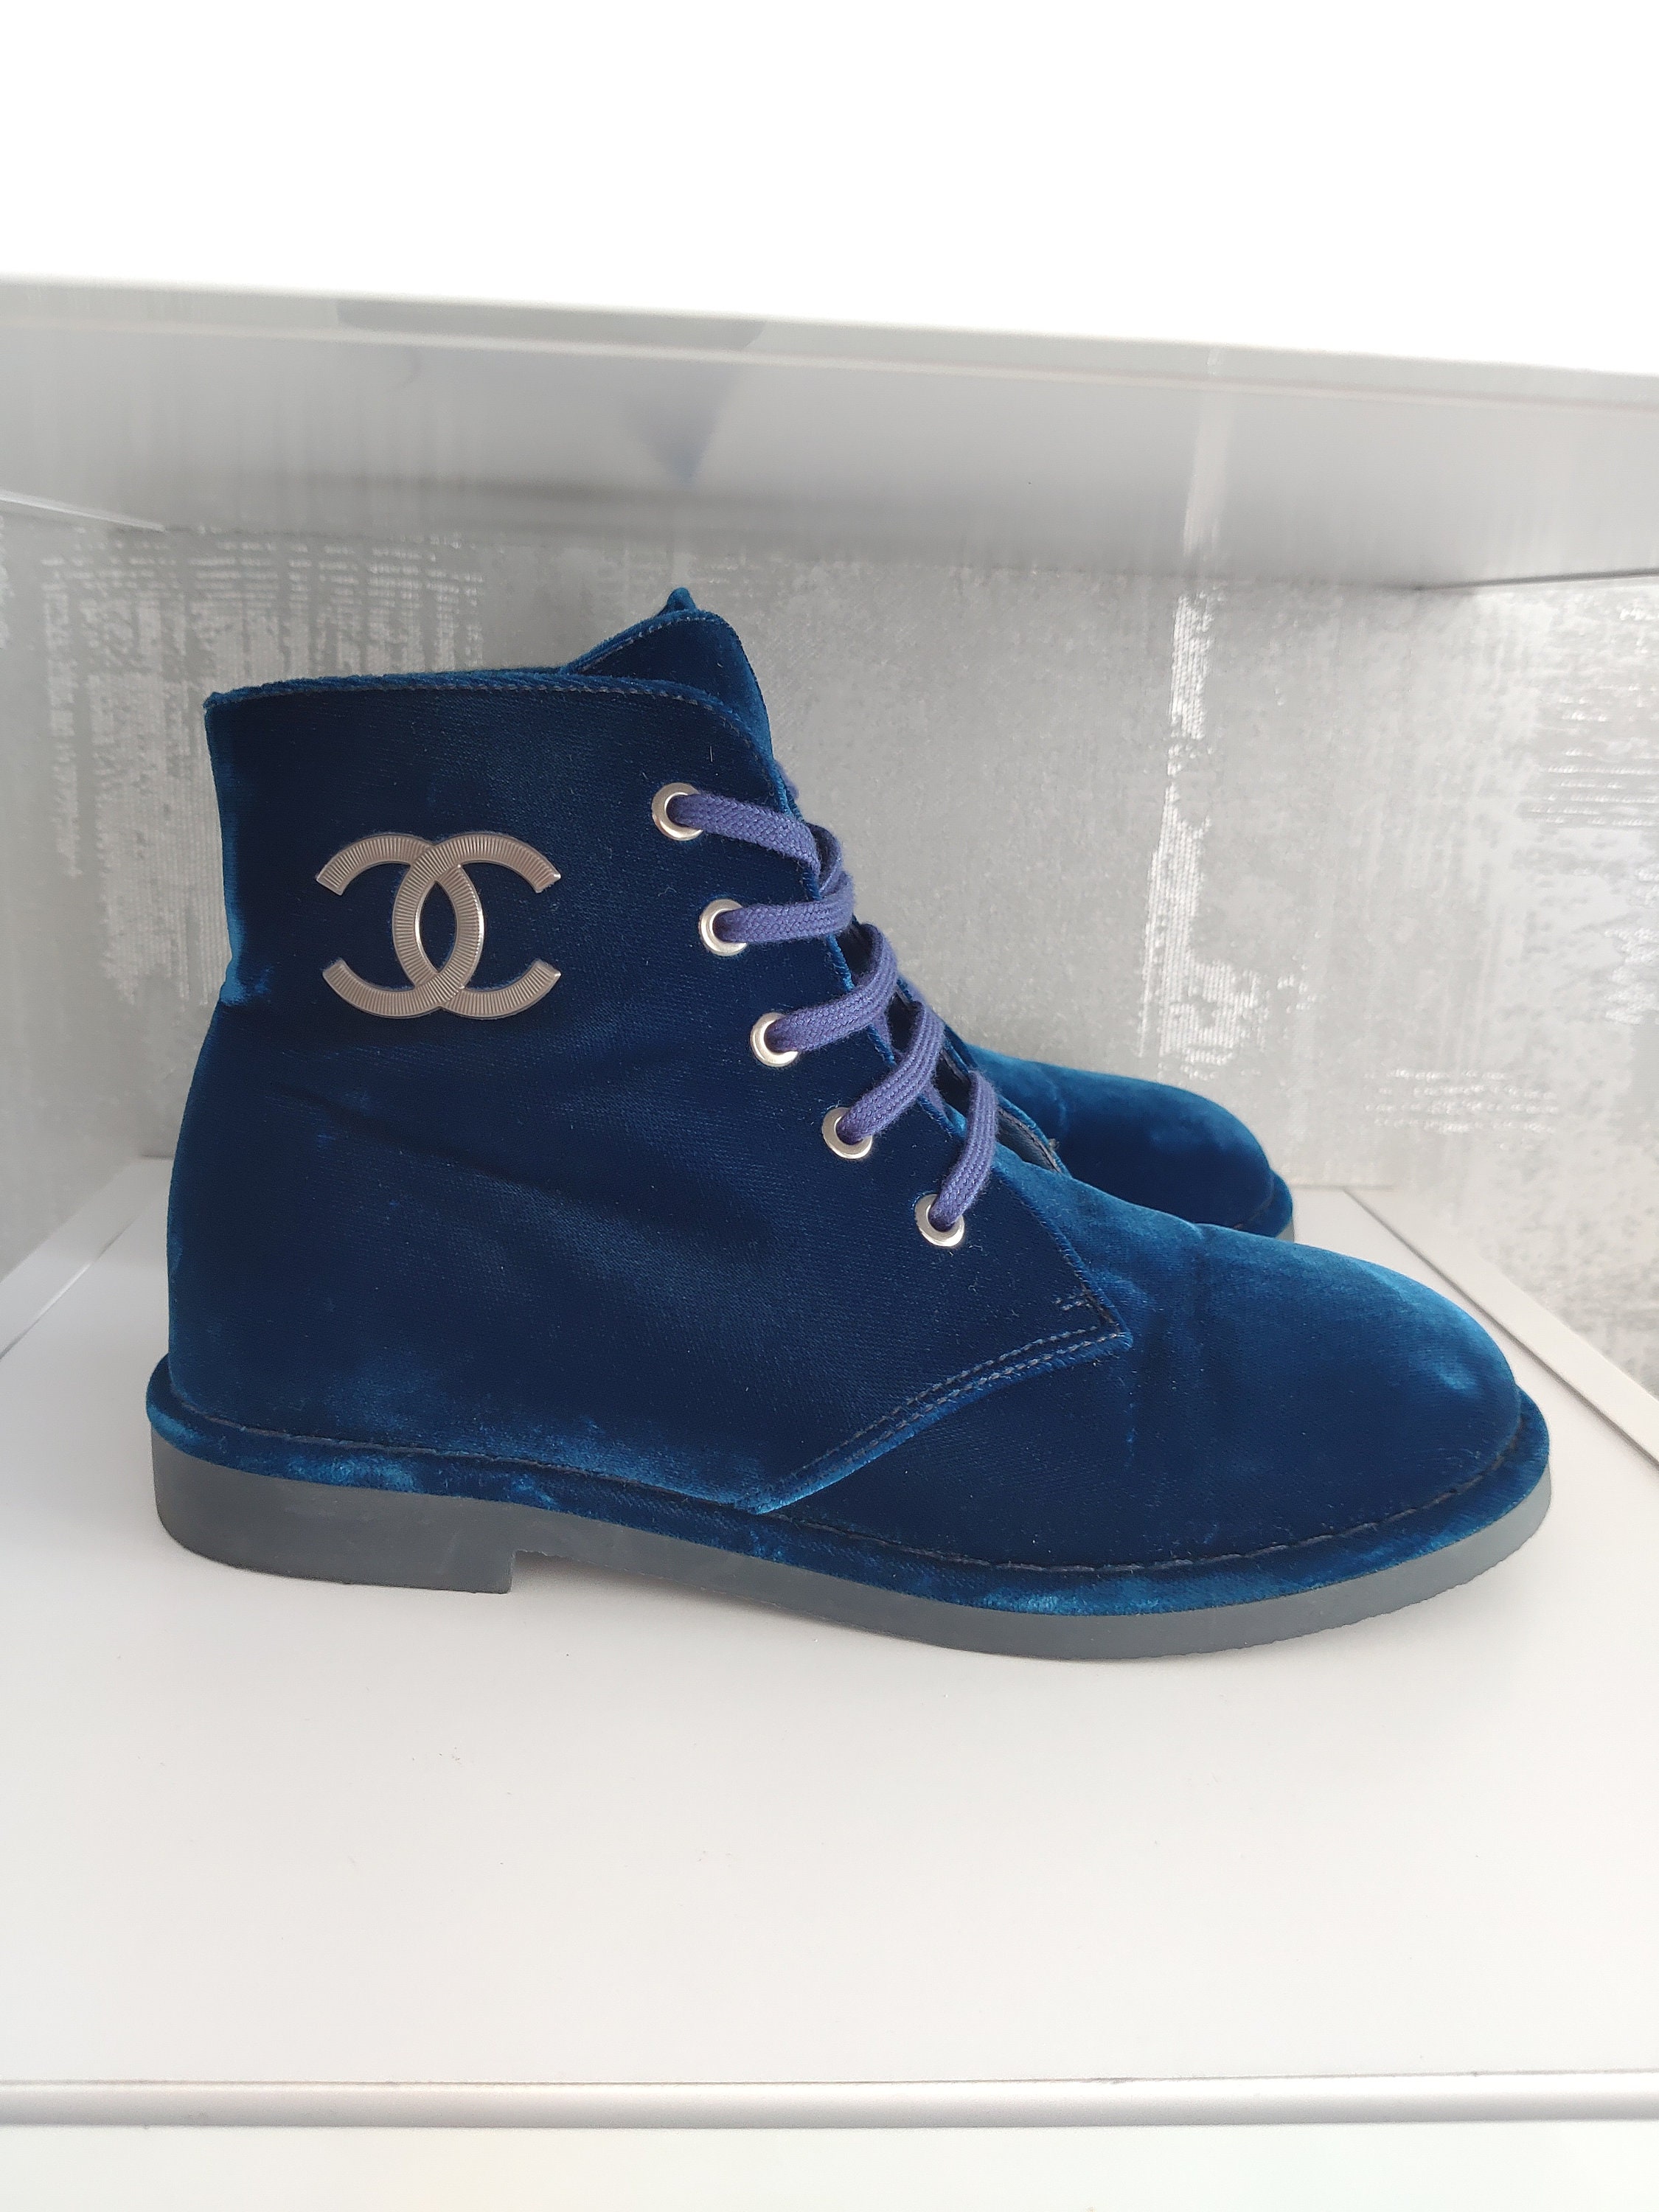 Shop Women's Chanel Boots